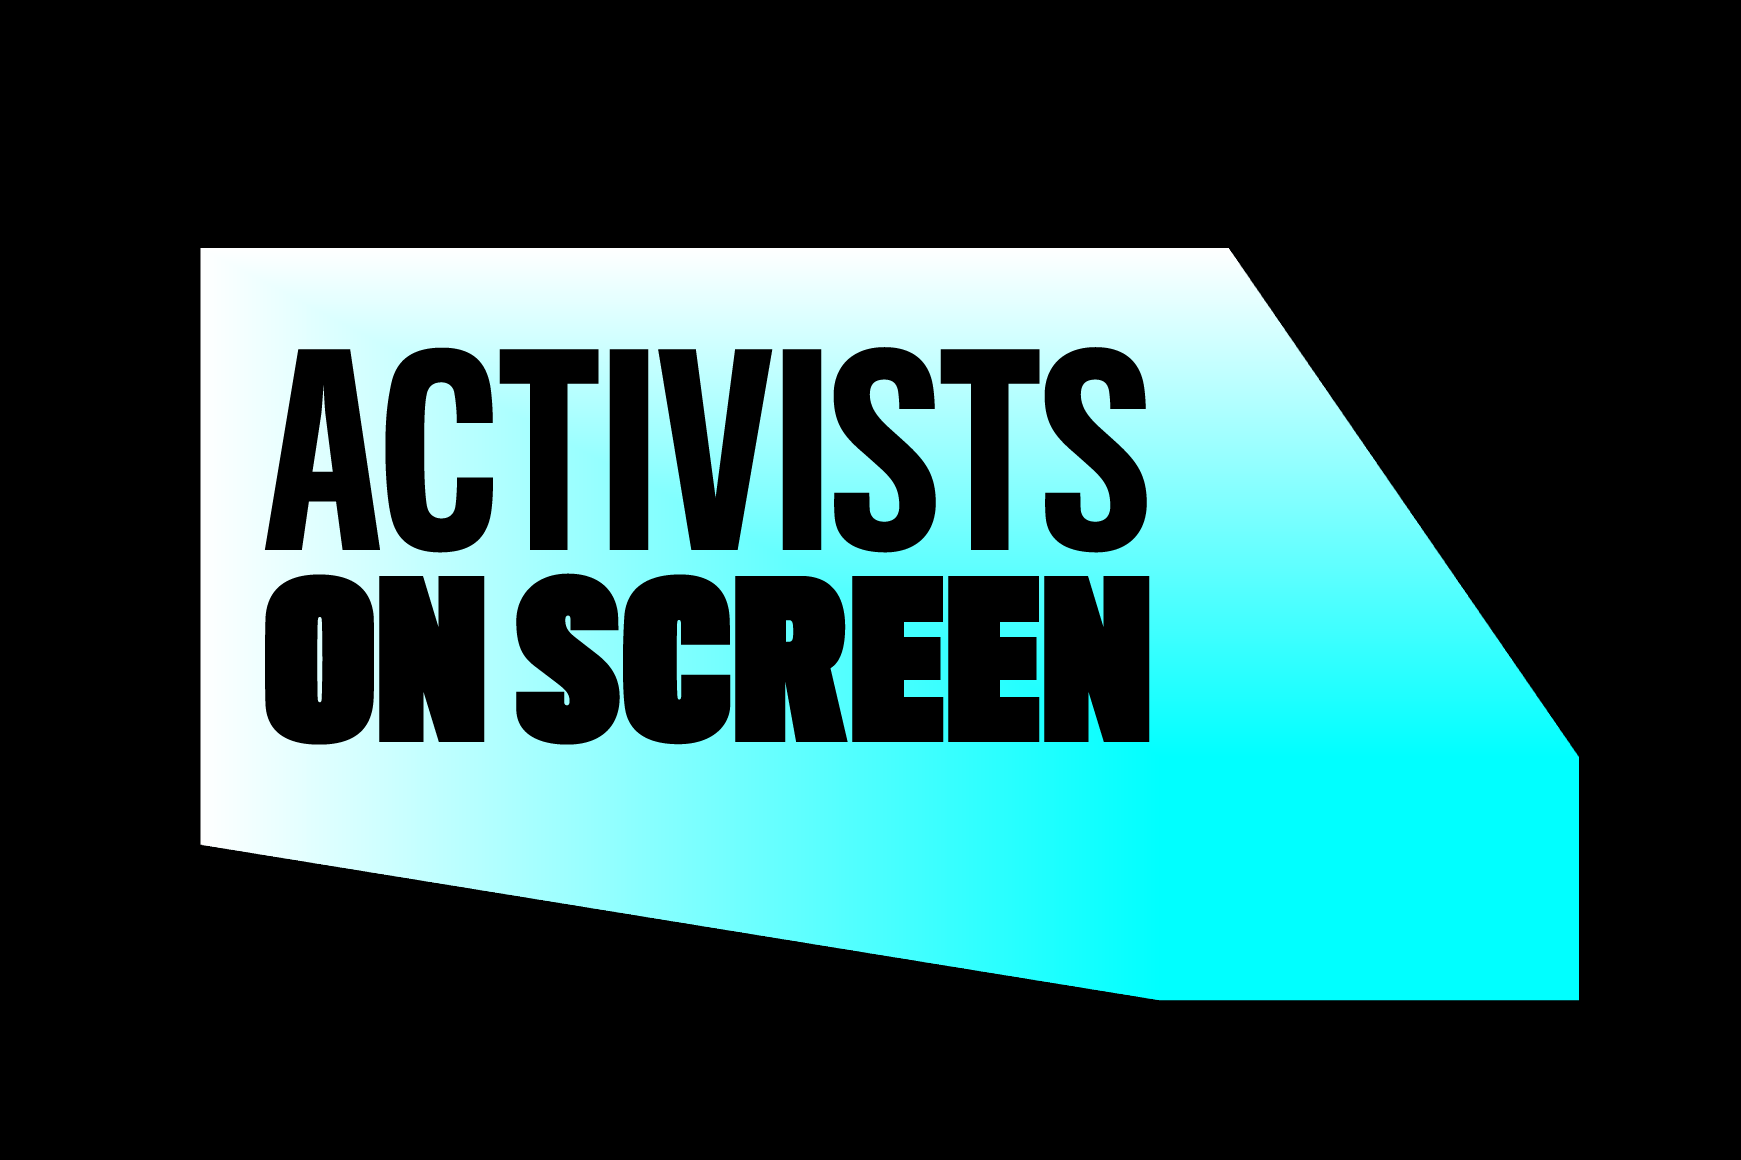 Fondo negro con gráfico azul emergente que lee el texto "Activistas en pantalla"